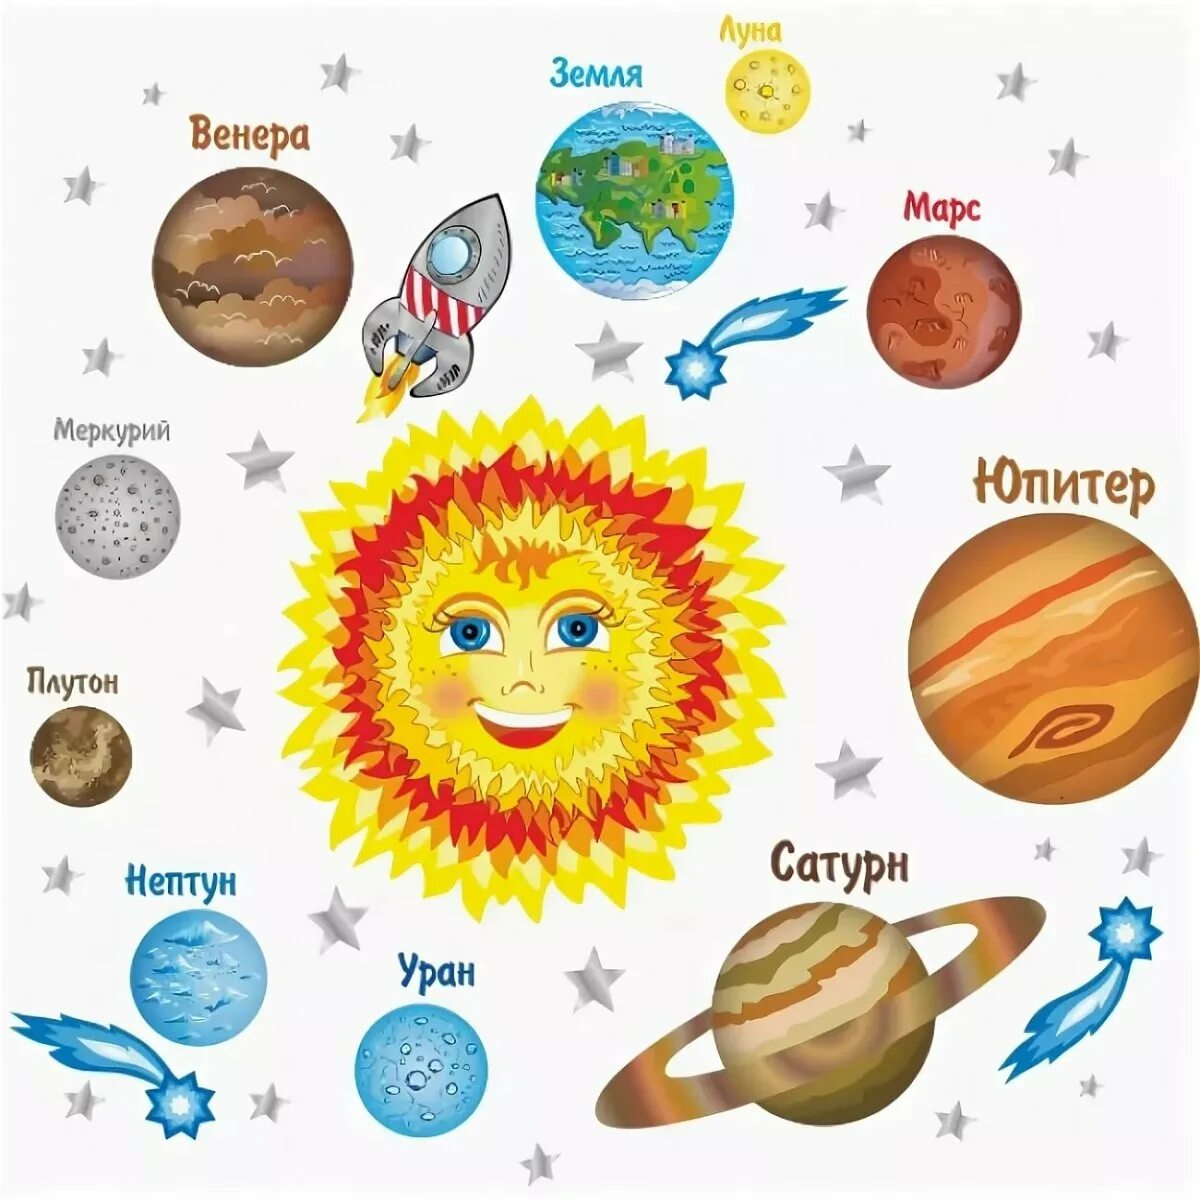 Планеты картинки для детей дошкольного возраста. Солнечная система рисунок с названиями планет для детей. Солнечная система для дет. С12нечная система 32я 3етей. Планеты Солнечная системы д я детей.